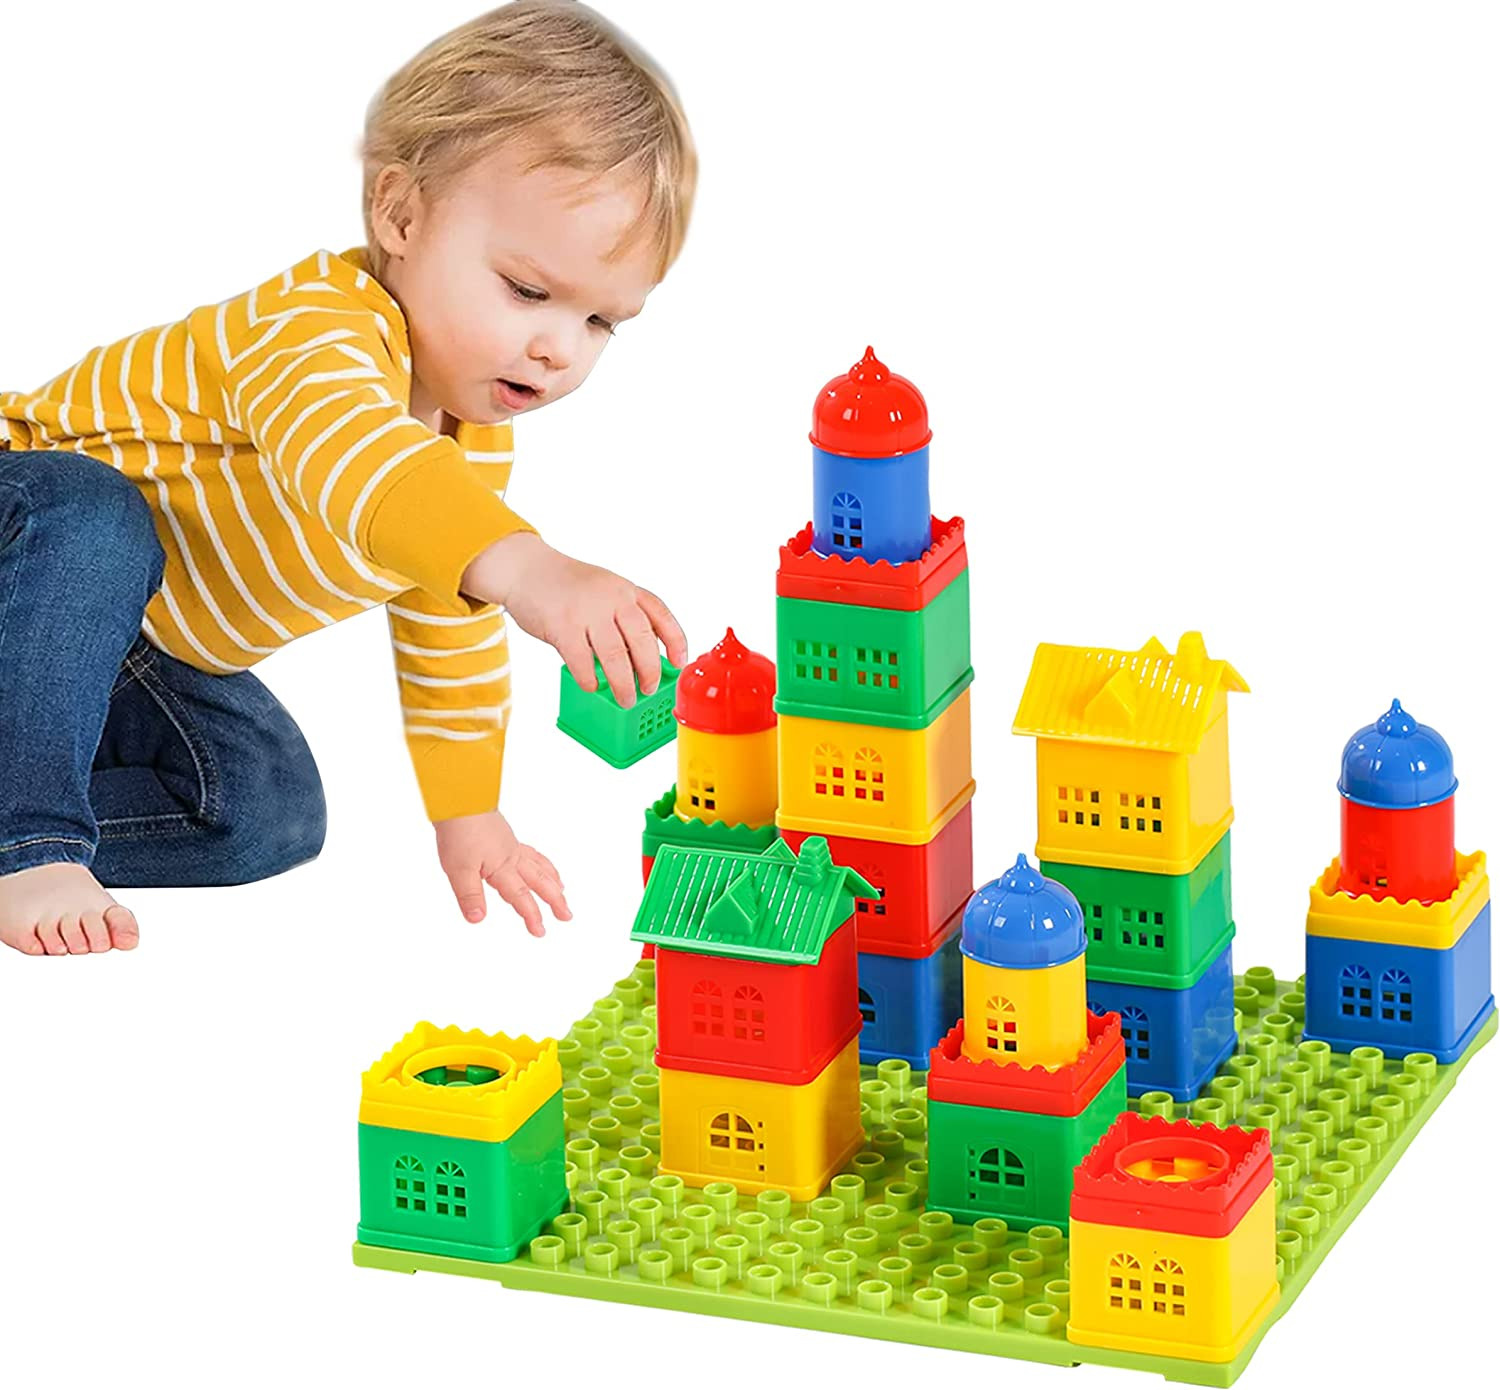 Fun Stacking Blocks for Toddlers 4-8